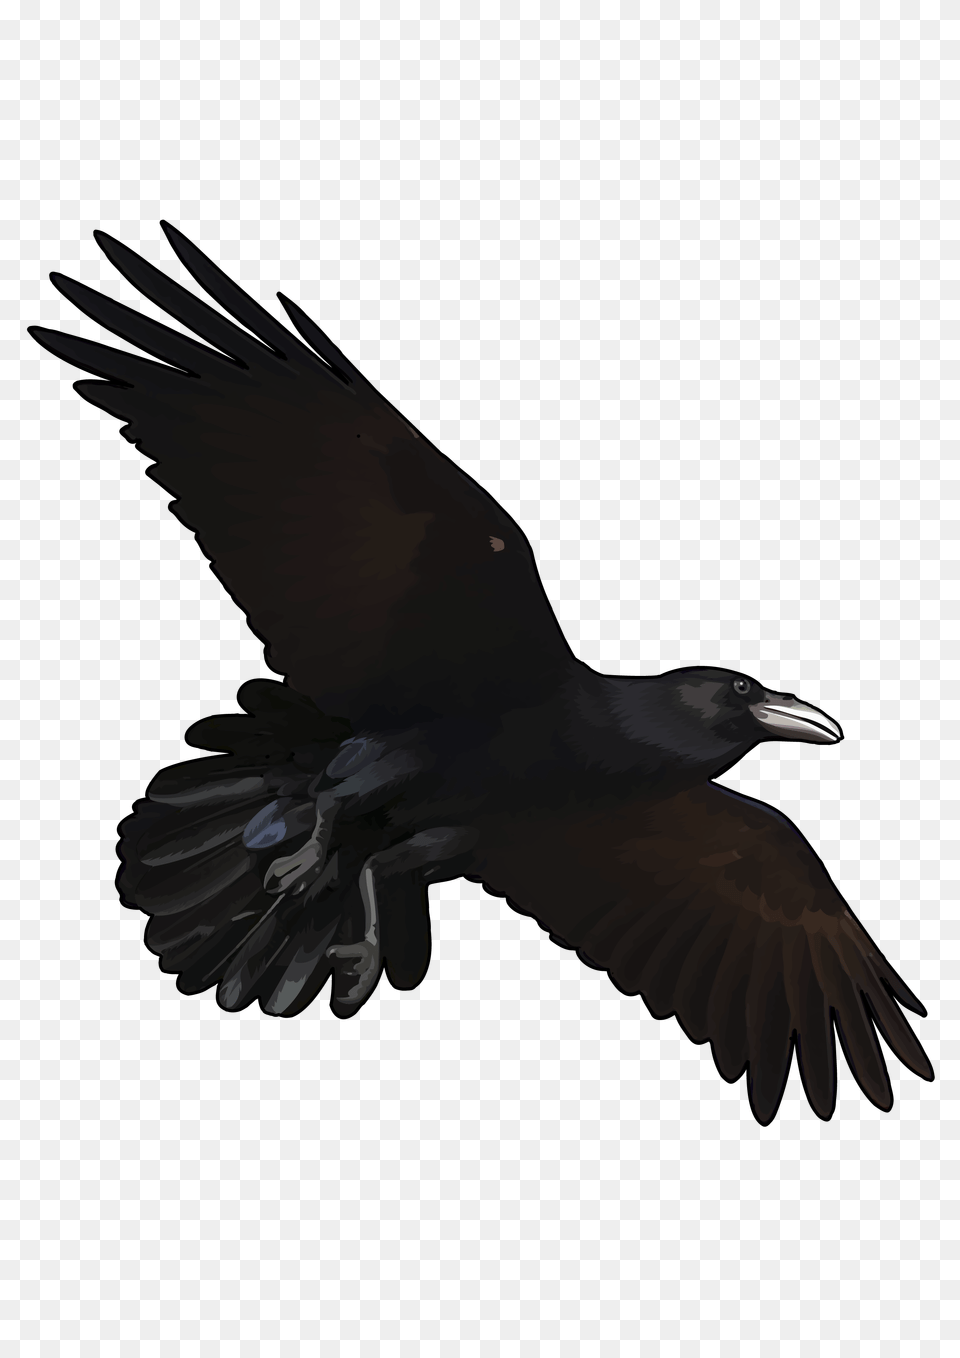 Raven, Animal, Bird, Blackbird, Flying Png Image